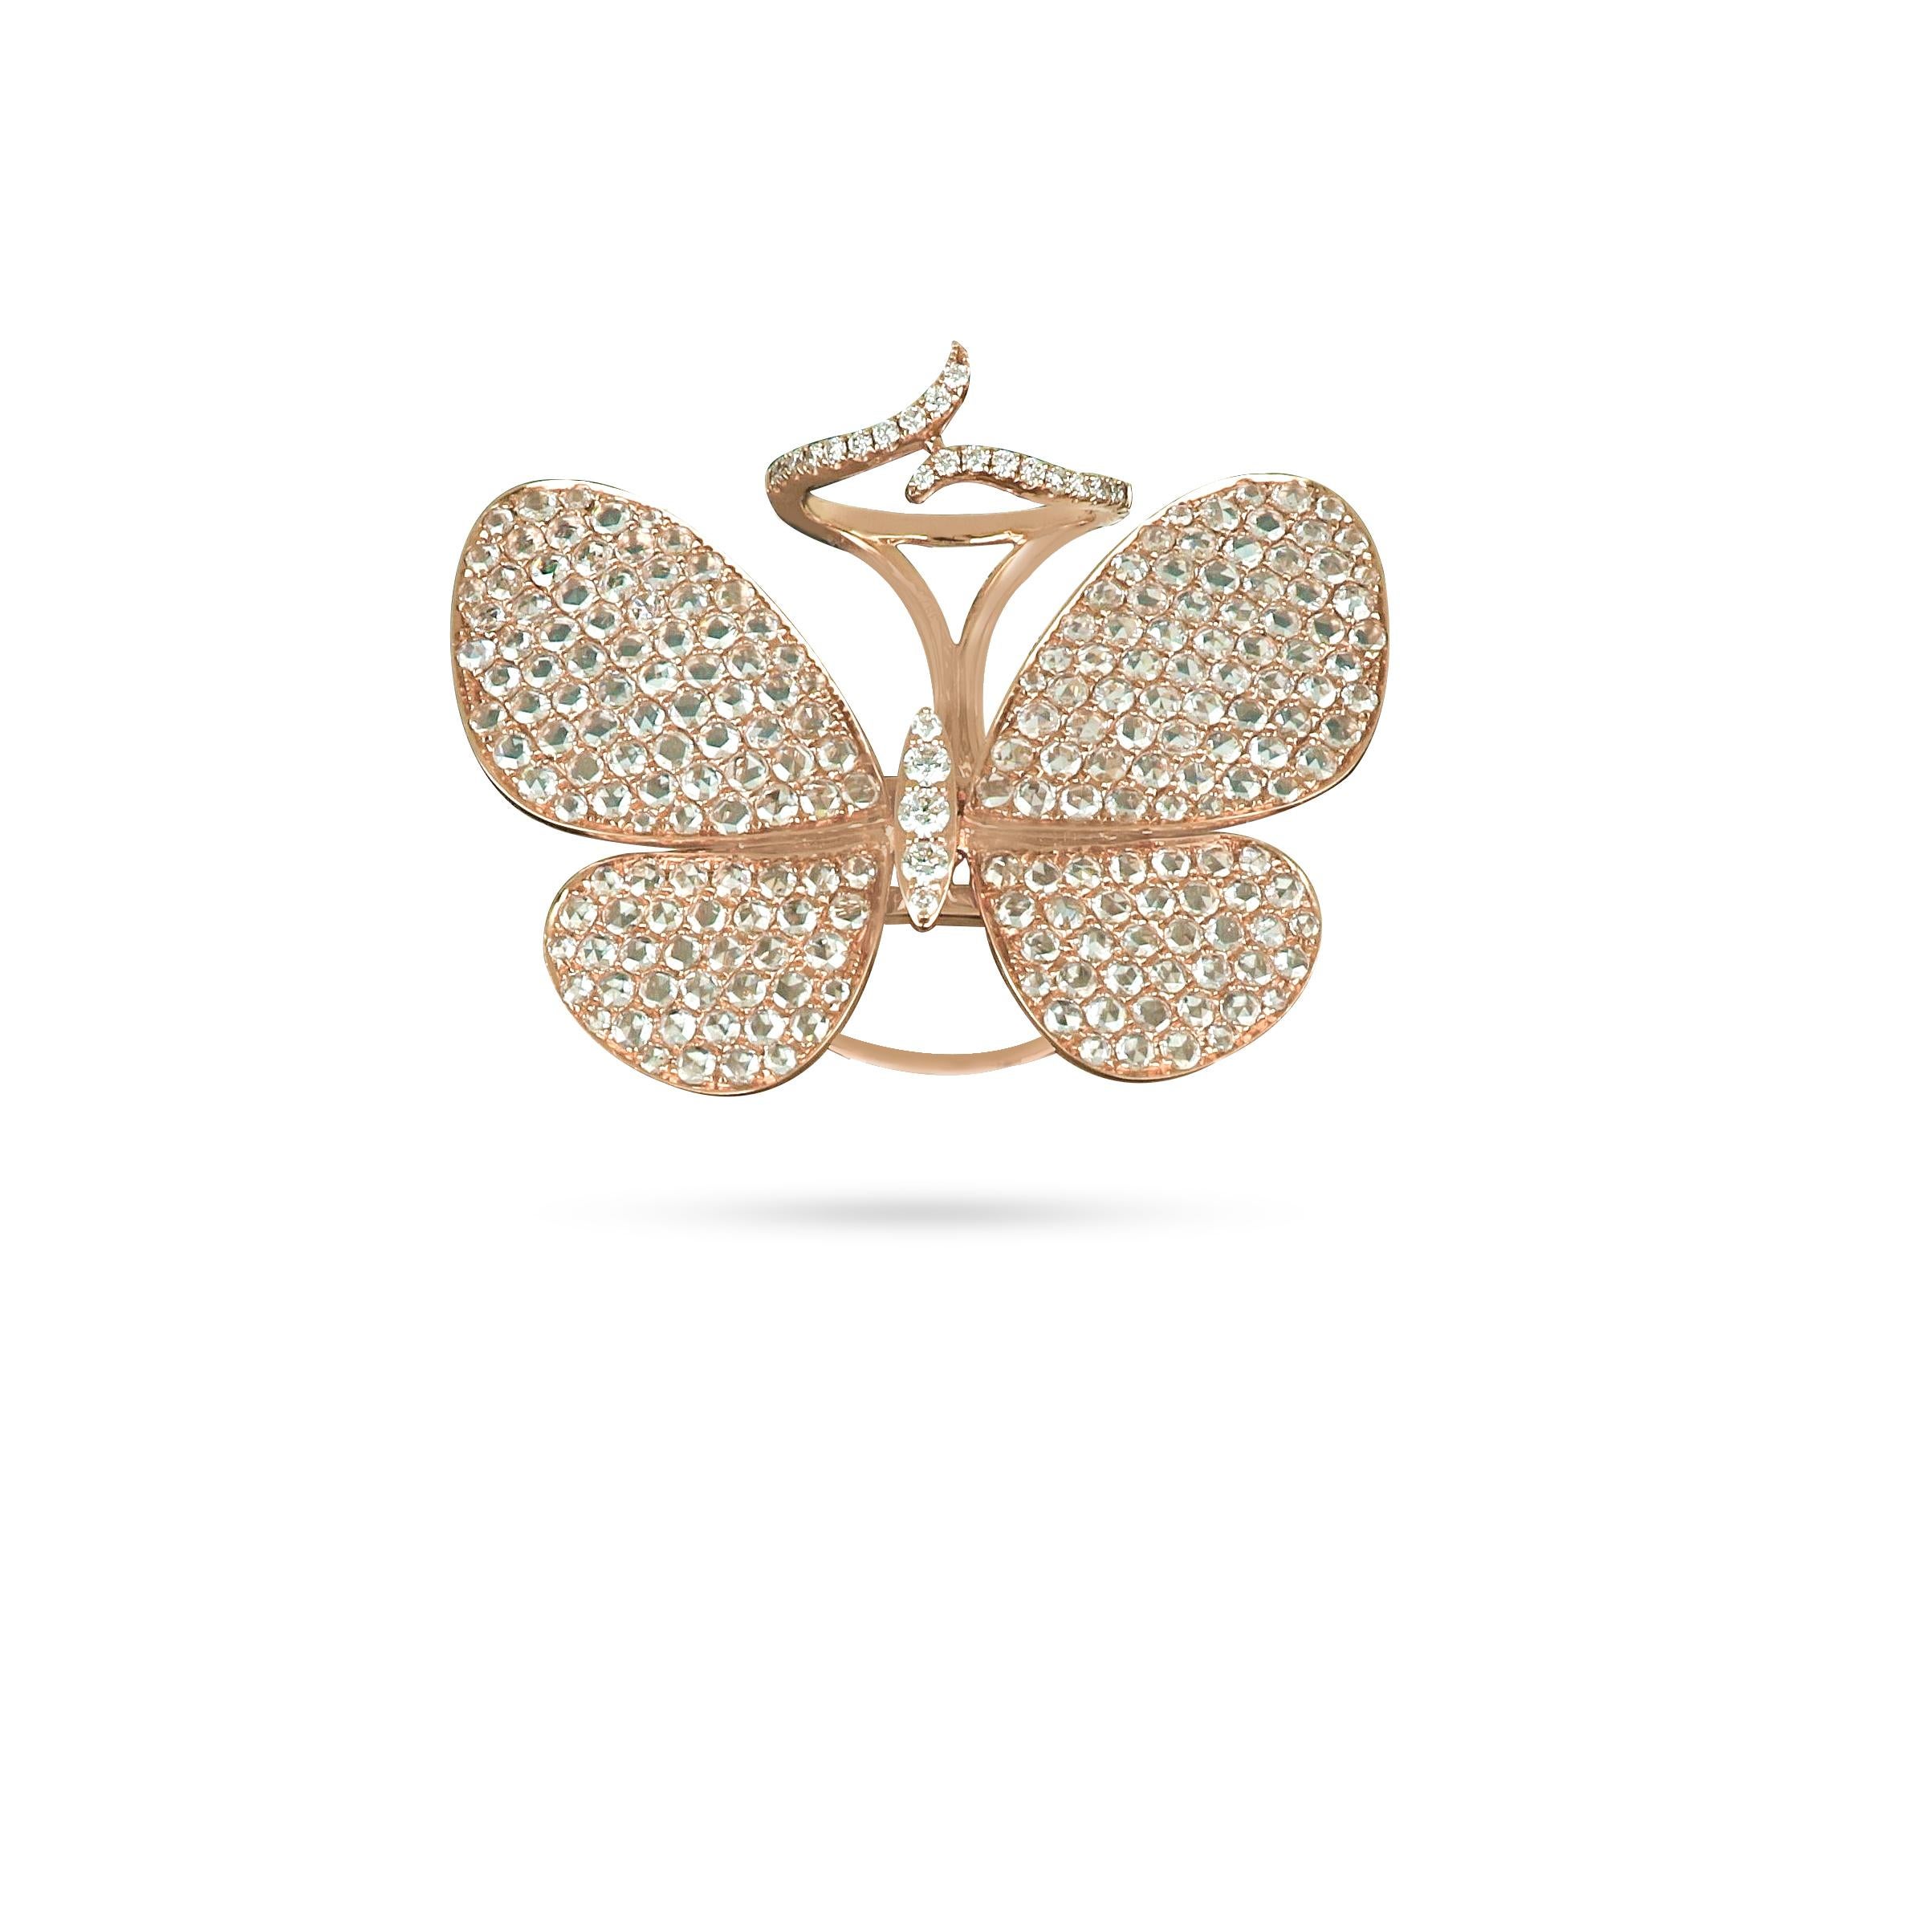 Der Schmetterlingsring von Amwaj aus 18 Karat Roségold ist ein perfekt proportionierter Ausdruck des Schmetterlingsmotivs und zeichnet sich durch eine klassische Anordnung runder Diamanten aus, die sanft angewinkelt sind, um die Zartheit der Flügel